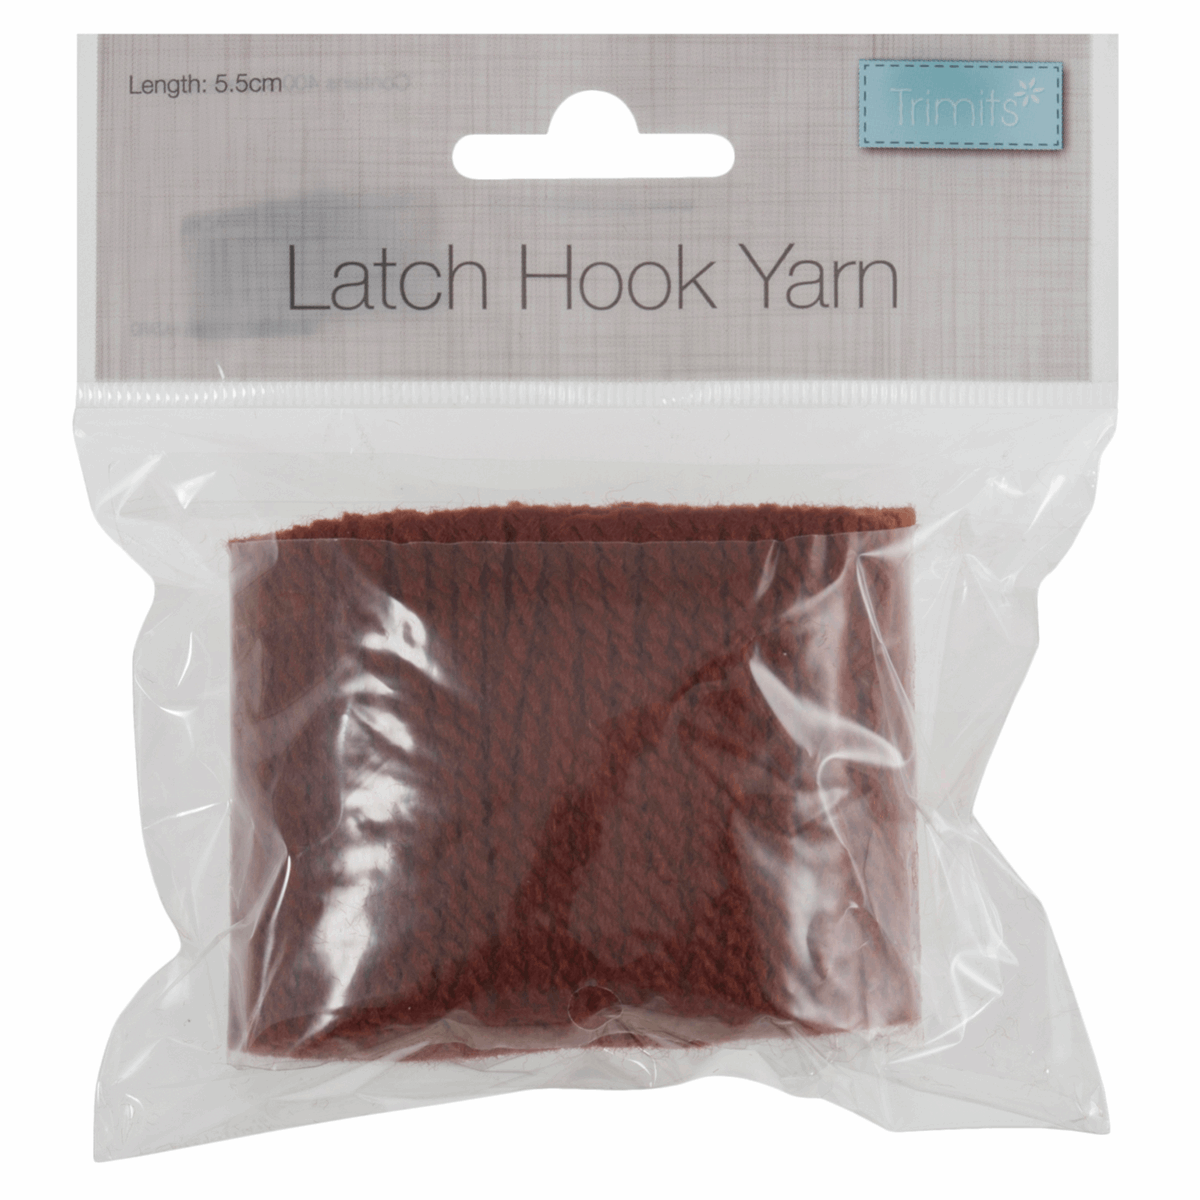 Latch Hook Yarn 5.5cm - Burnt Sienna